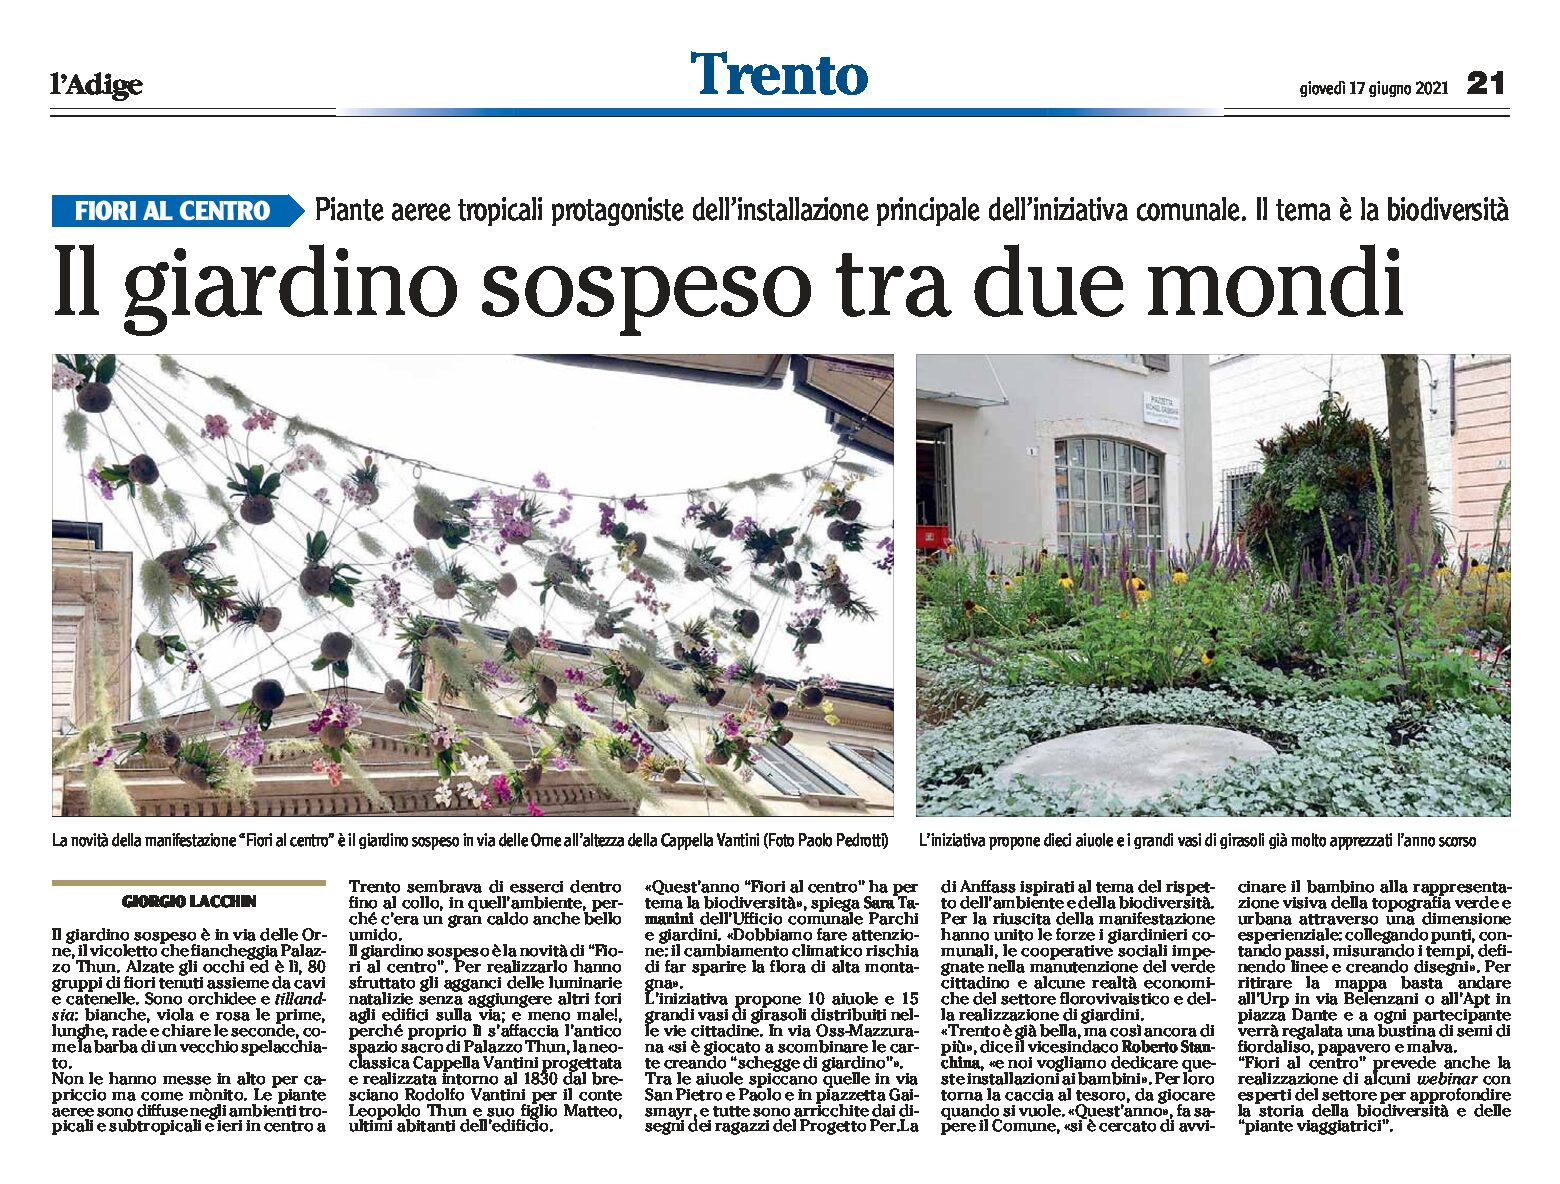 Trento, Fiori al centro: il giardino sospeso tra due mondi